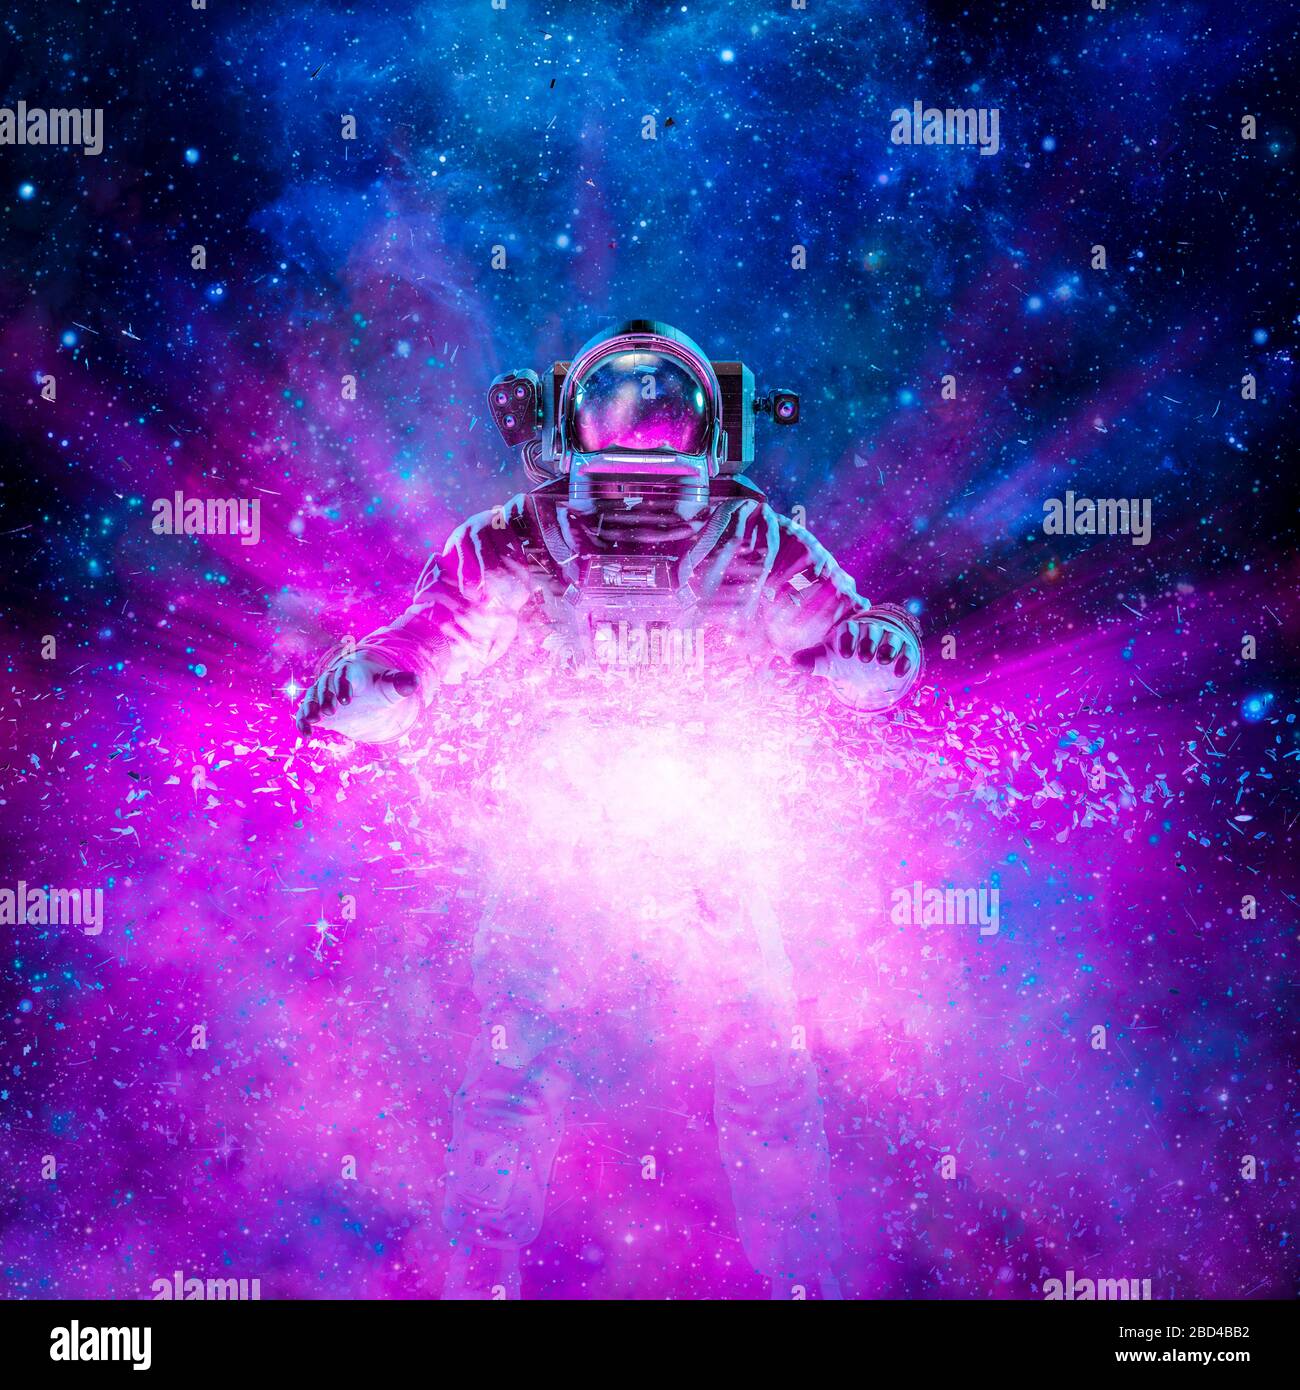 Kosmischer Lichtastronaut/3D-Darstellung der Science-Fiction-Szene mit Astronaut, der von explodierender Galaxie im Weltall angezündet wird Stockfoto